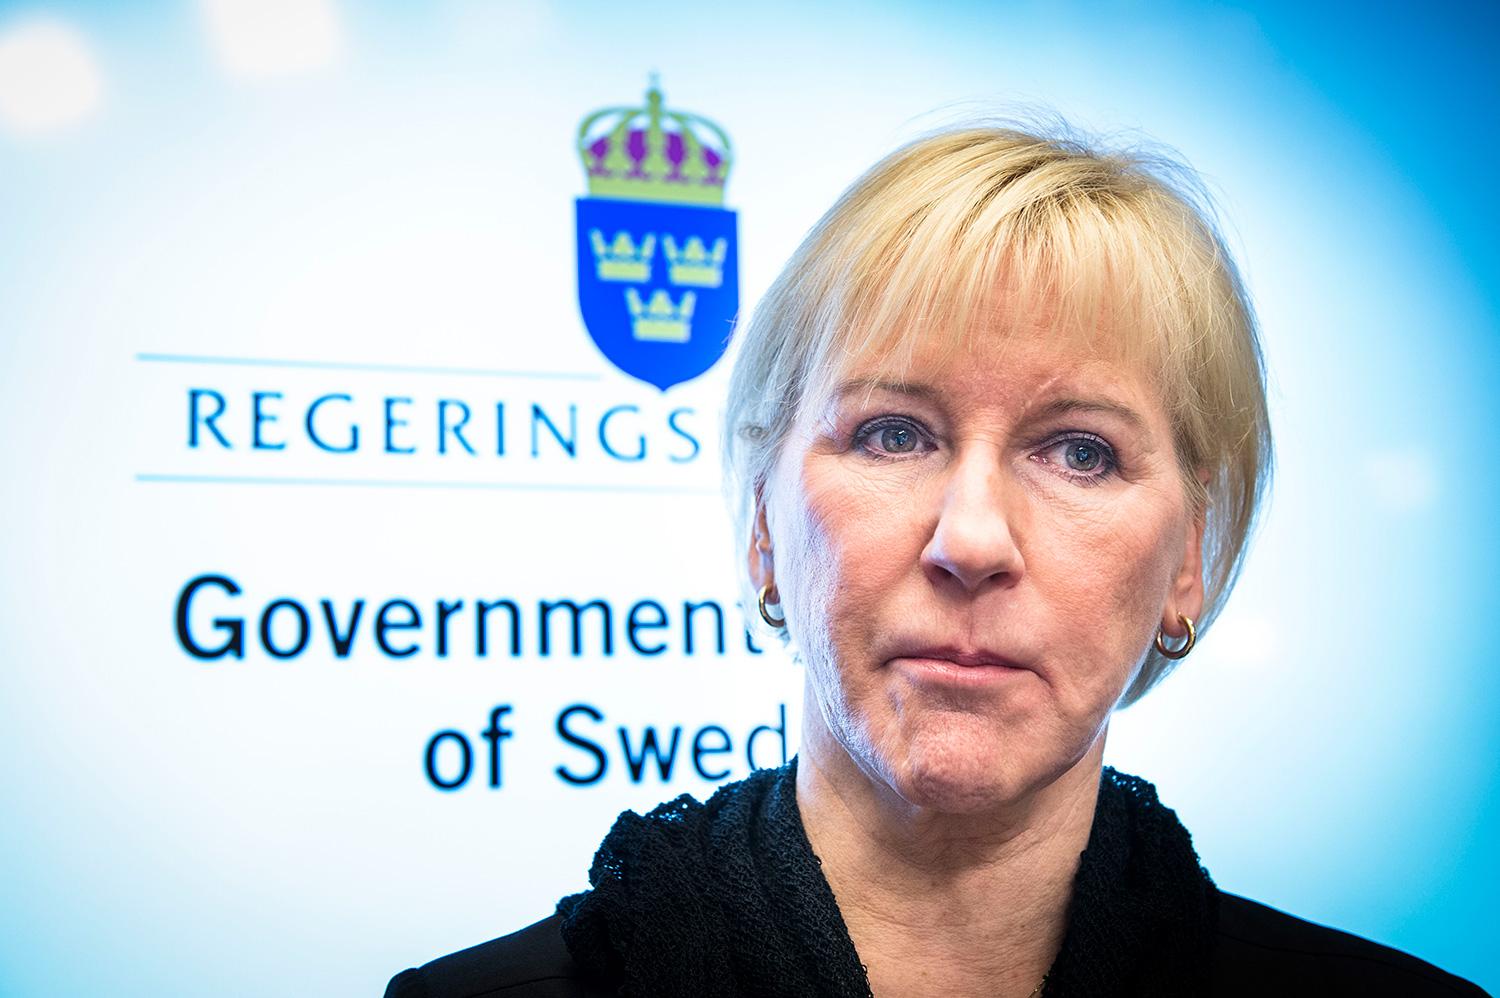 I sista stund stoppade Saudiarabien den svenska utrikesministern Margot Wallström från att tala om jämställdhet och Palestinafrågan vid Arabförbundet.